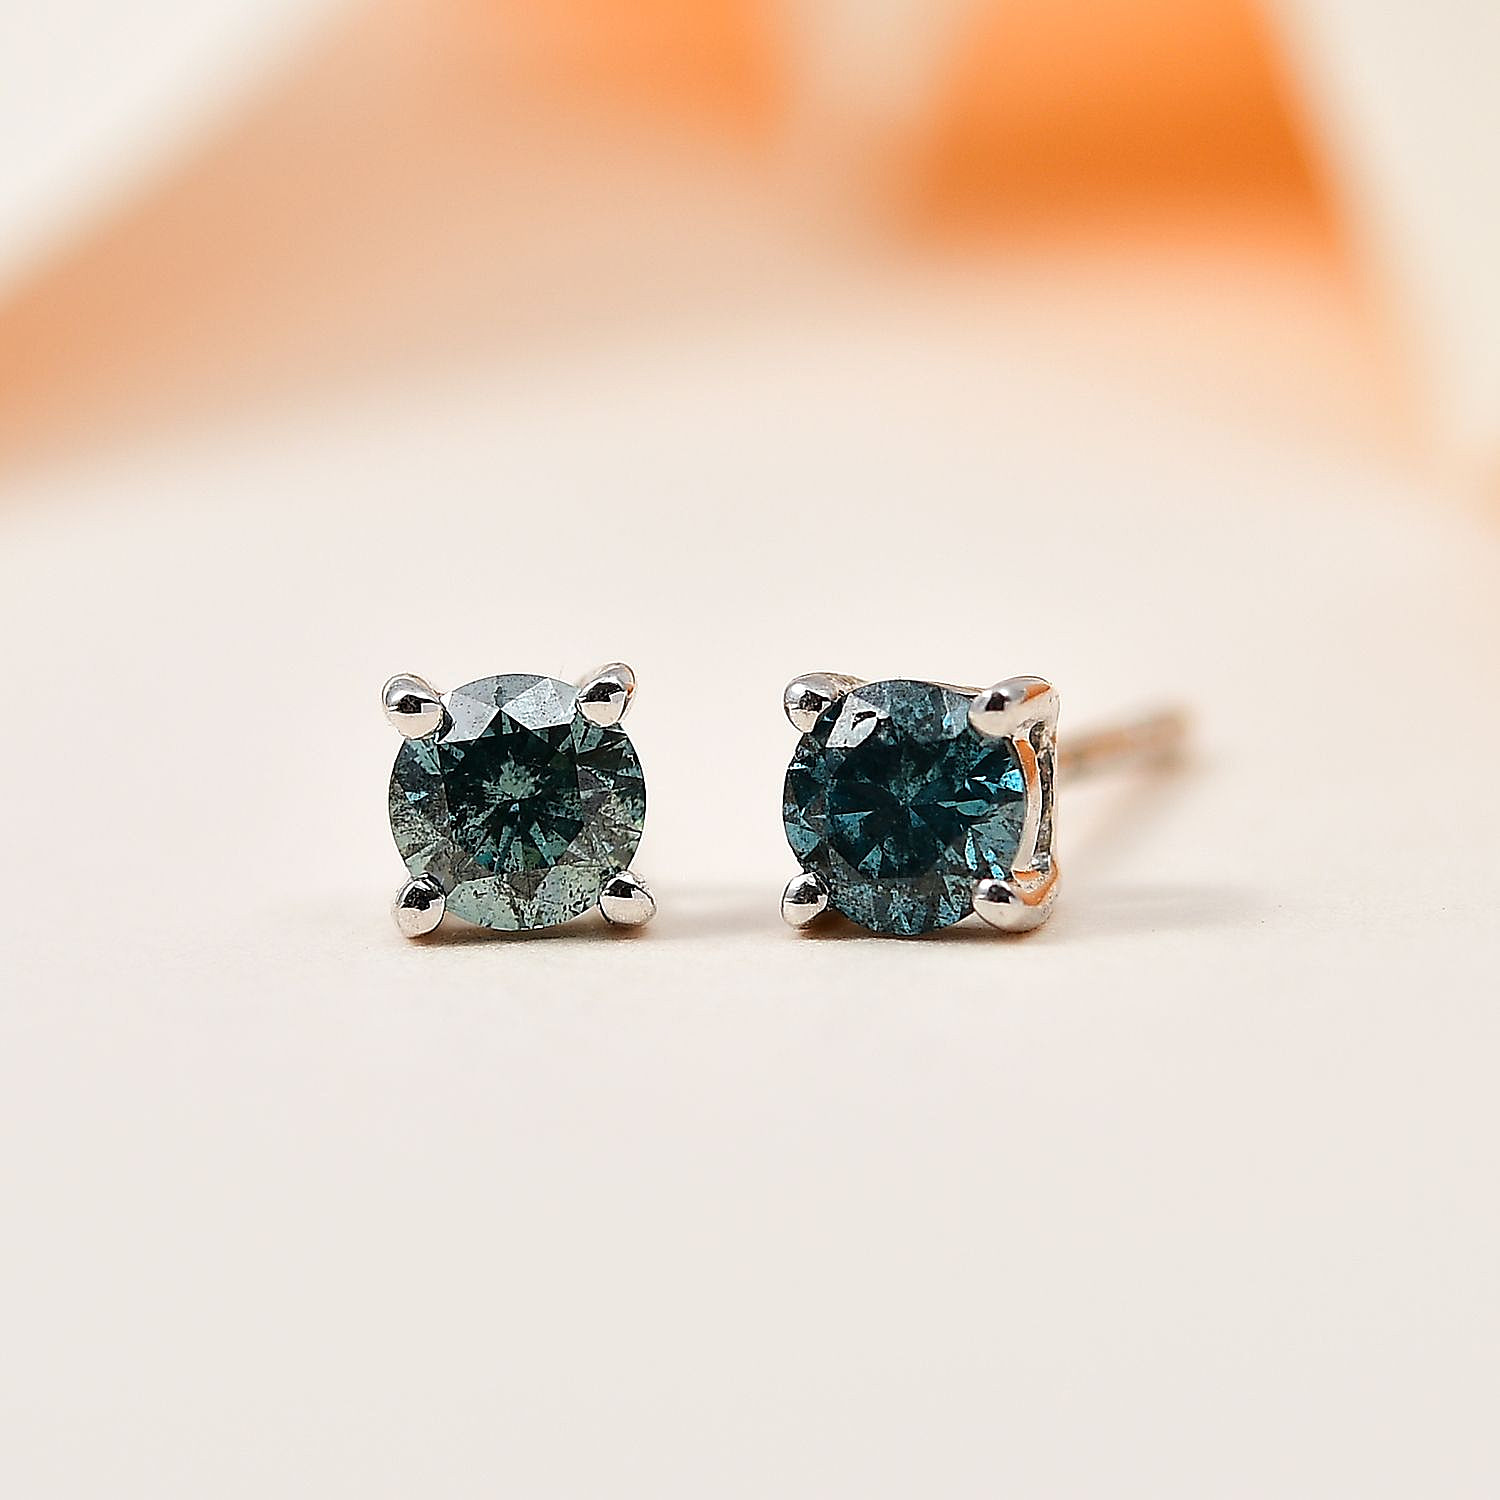 Diamond Earrings for Women Online in UK - Shop Now